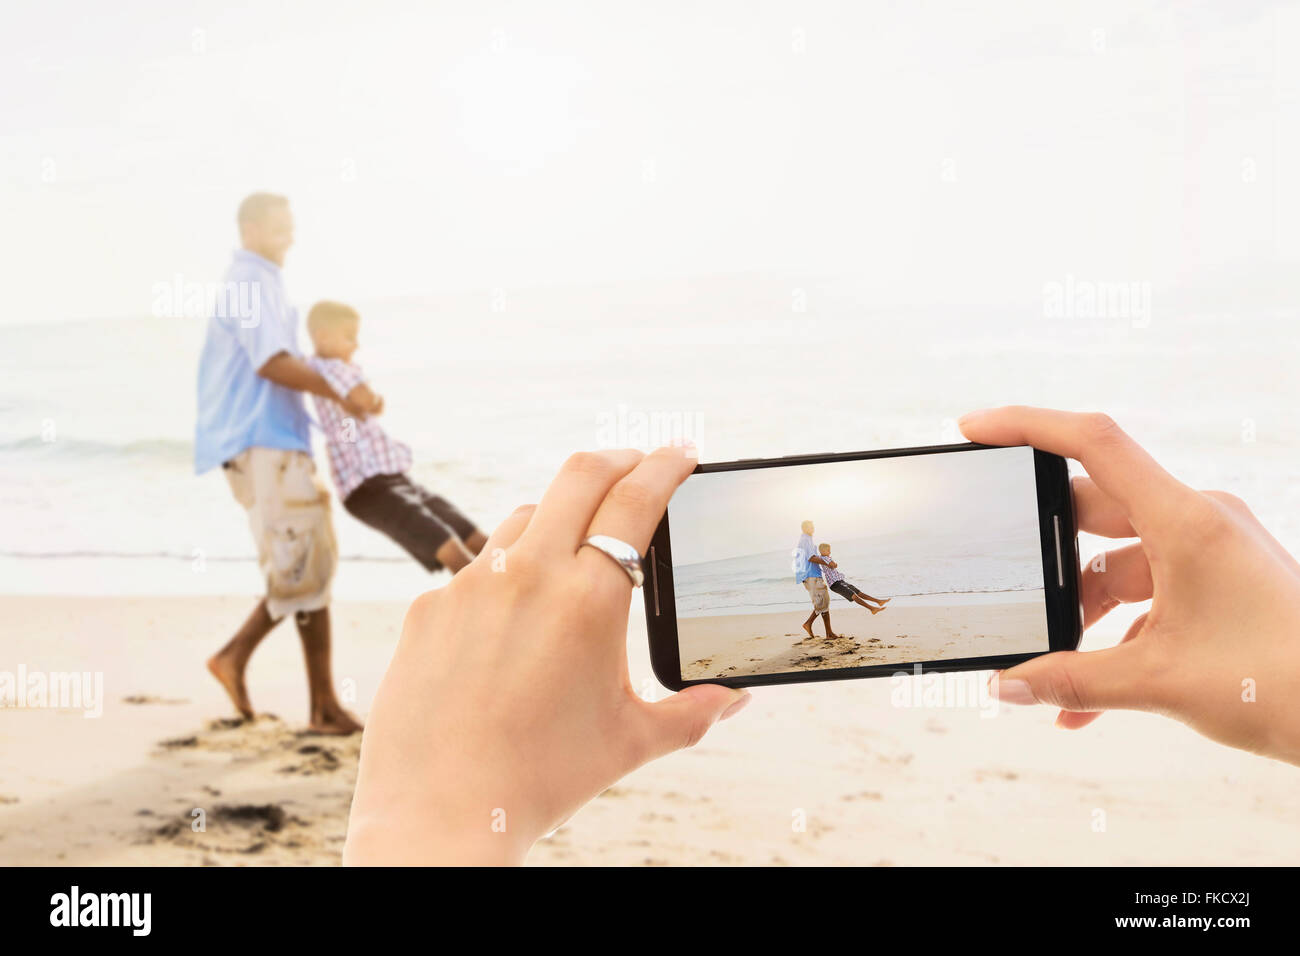 Perspectiva Personal de mujer fotografiando padre jugando con su hijo (12-13) en la playa Foto de stock